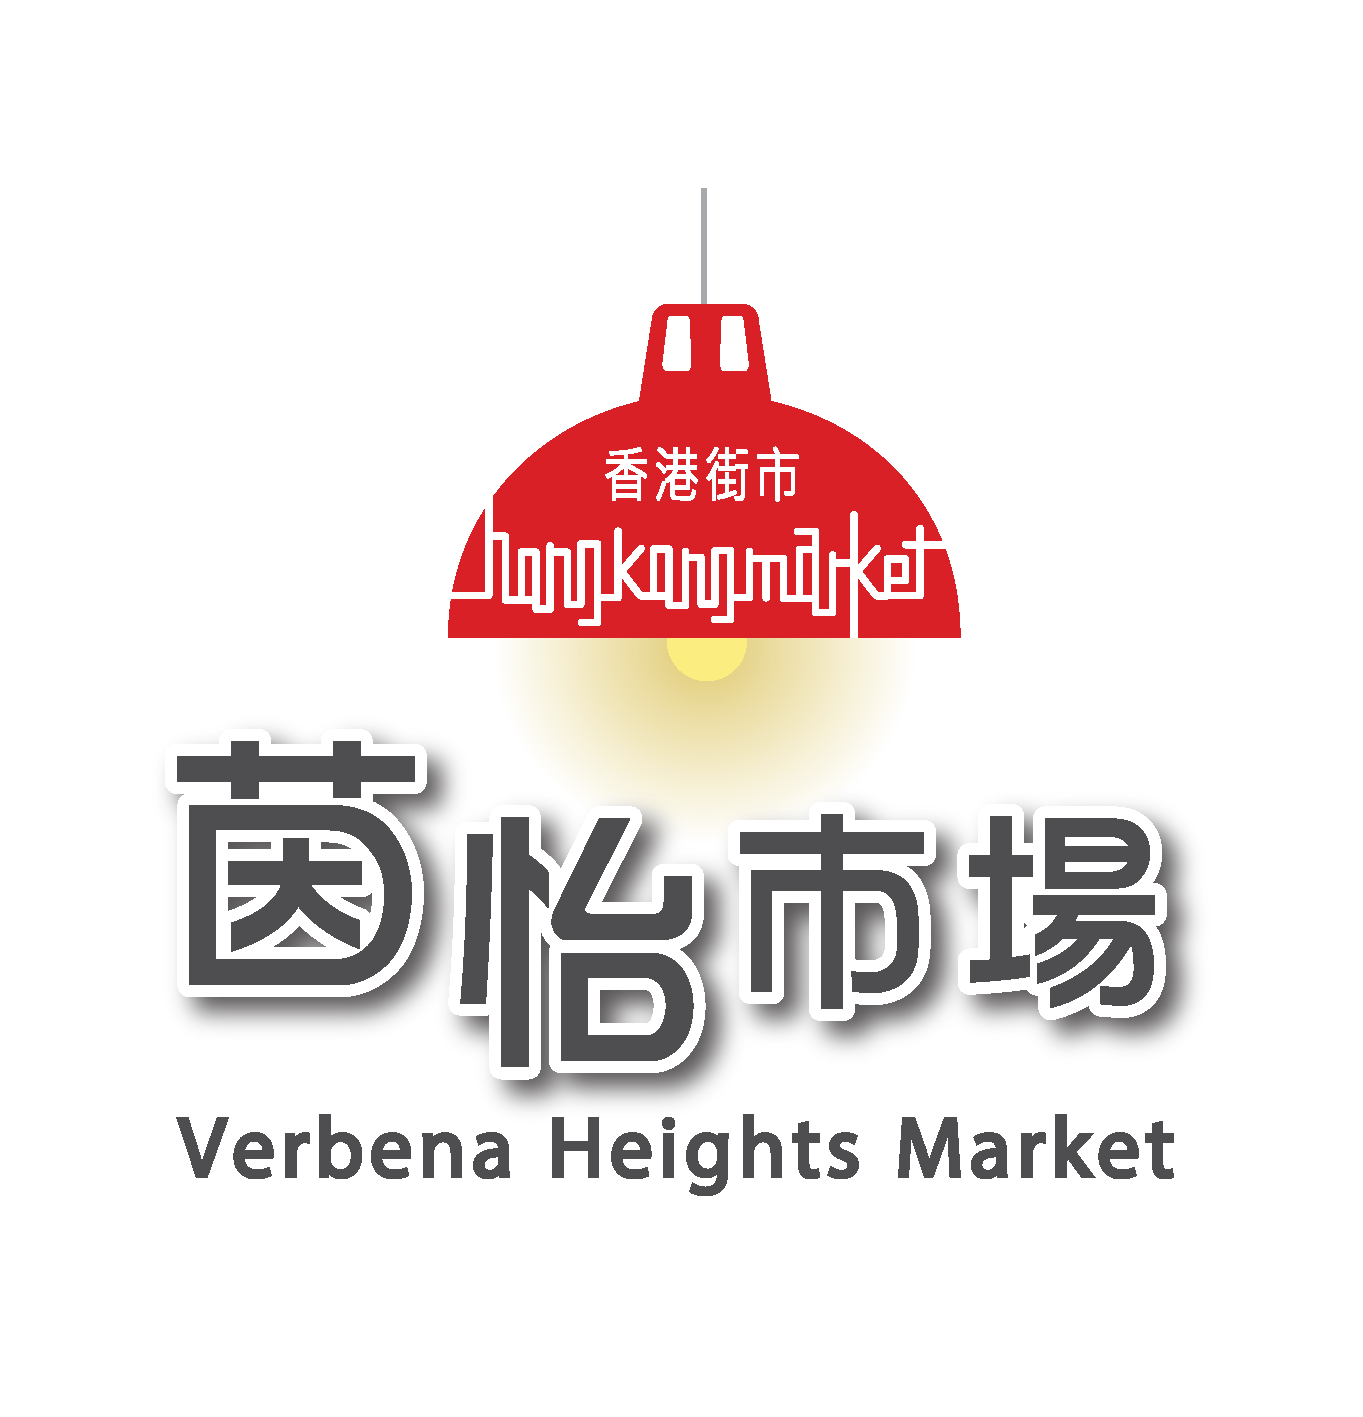 Verbena Heights Market